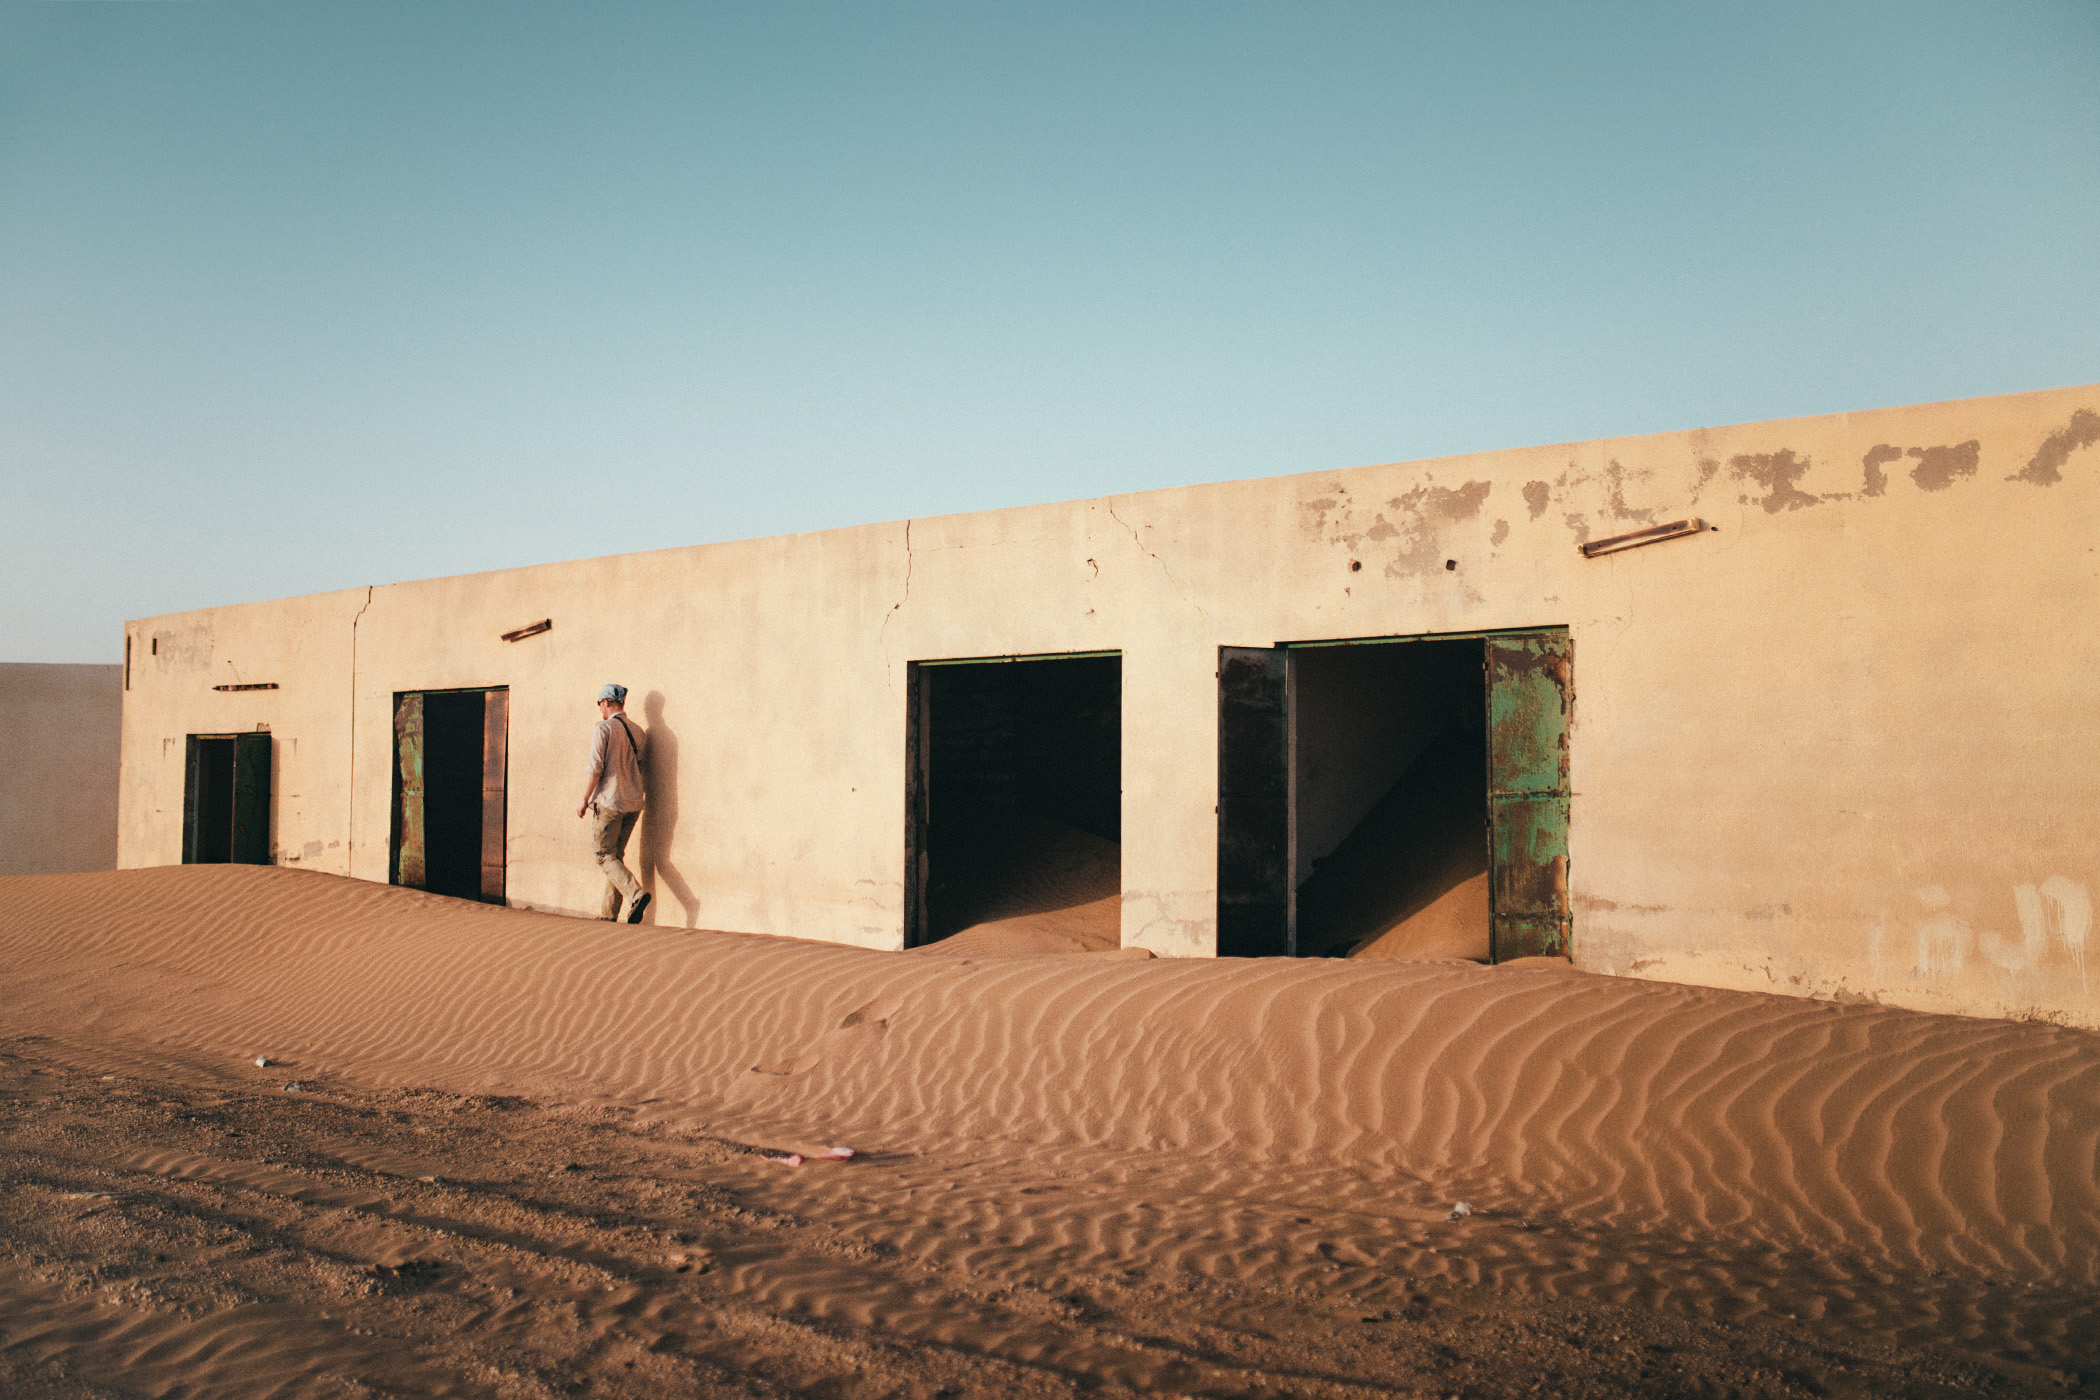 Sharqiya Sands, Oman